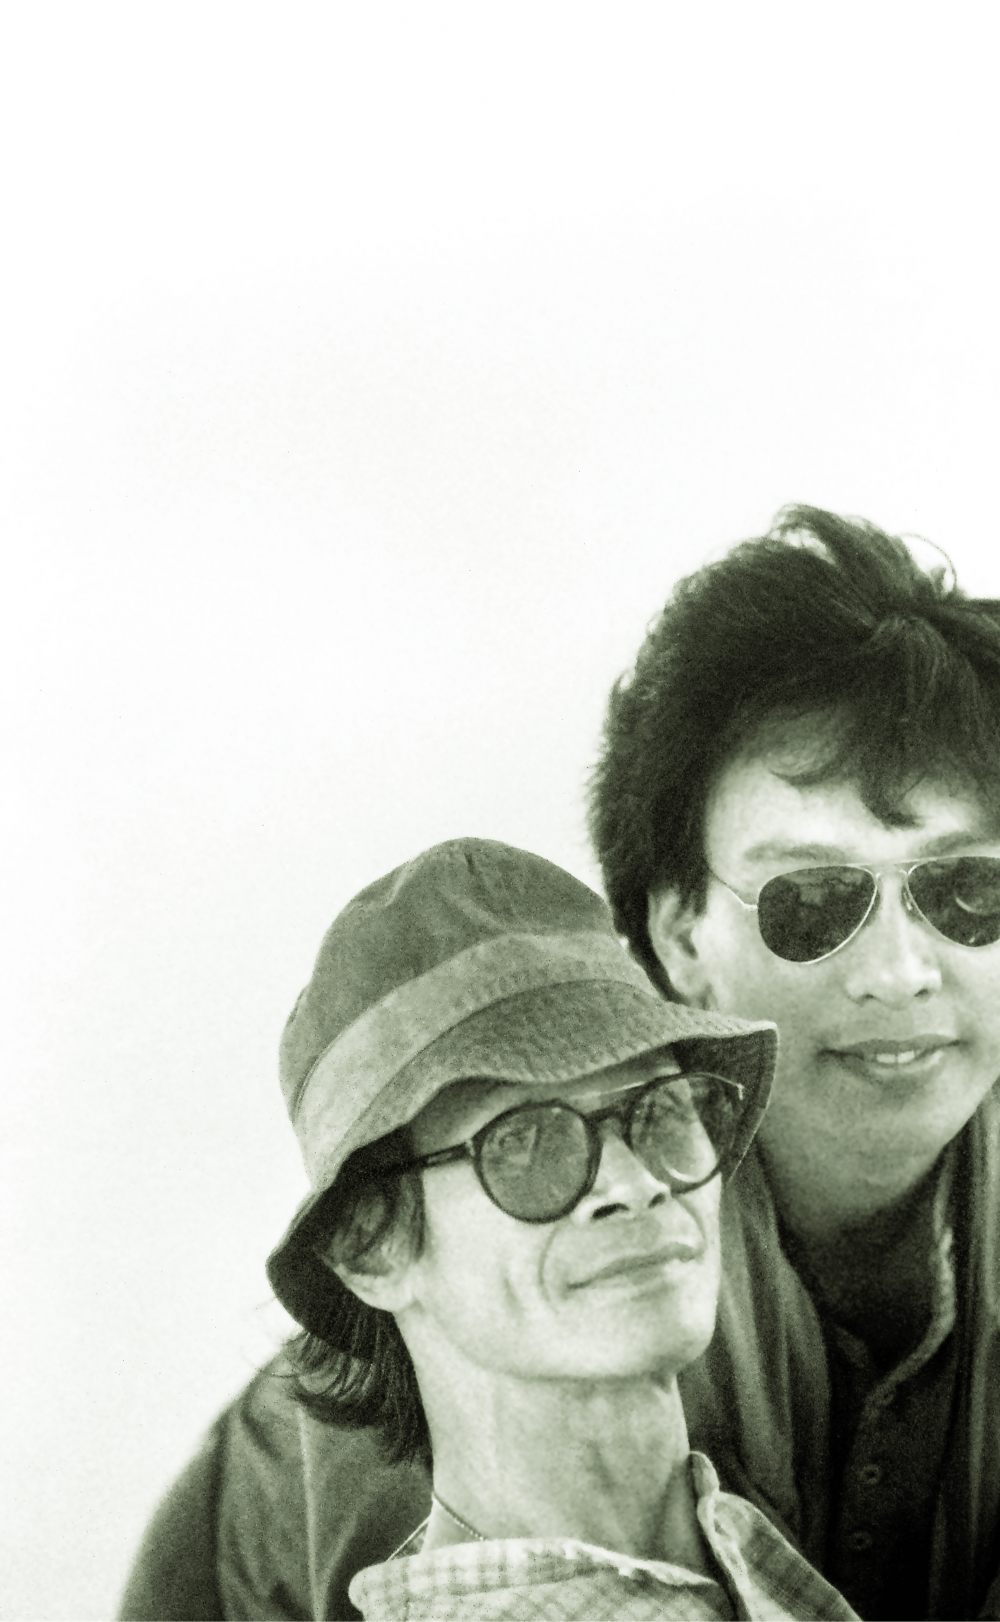 Nhạc sĩ Trịnh Công Sơn chụp cùng nhiếp ảnh gia Dương Minh Long tại Huế, năm 1995 ẢNH: NHÂN VẬT CUNG CẤP